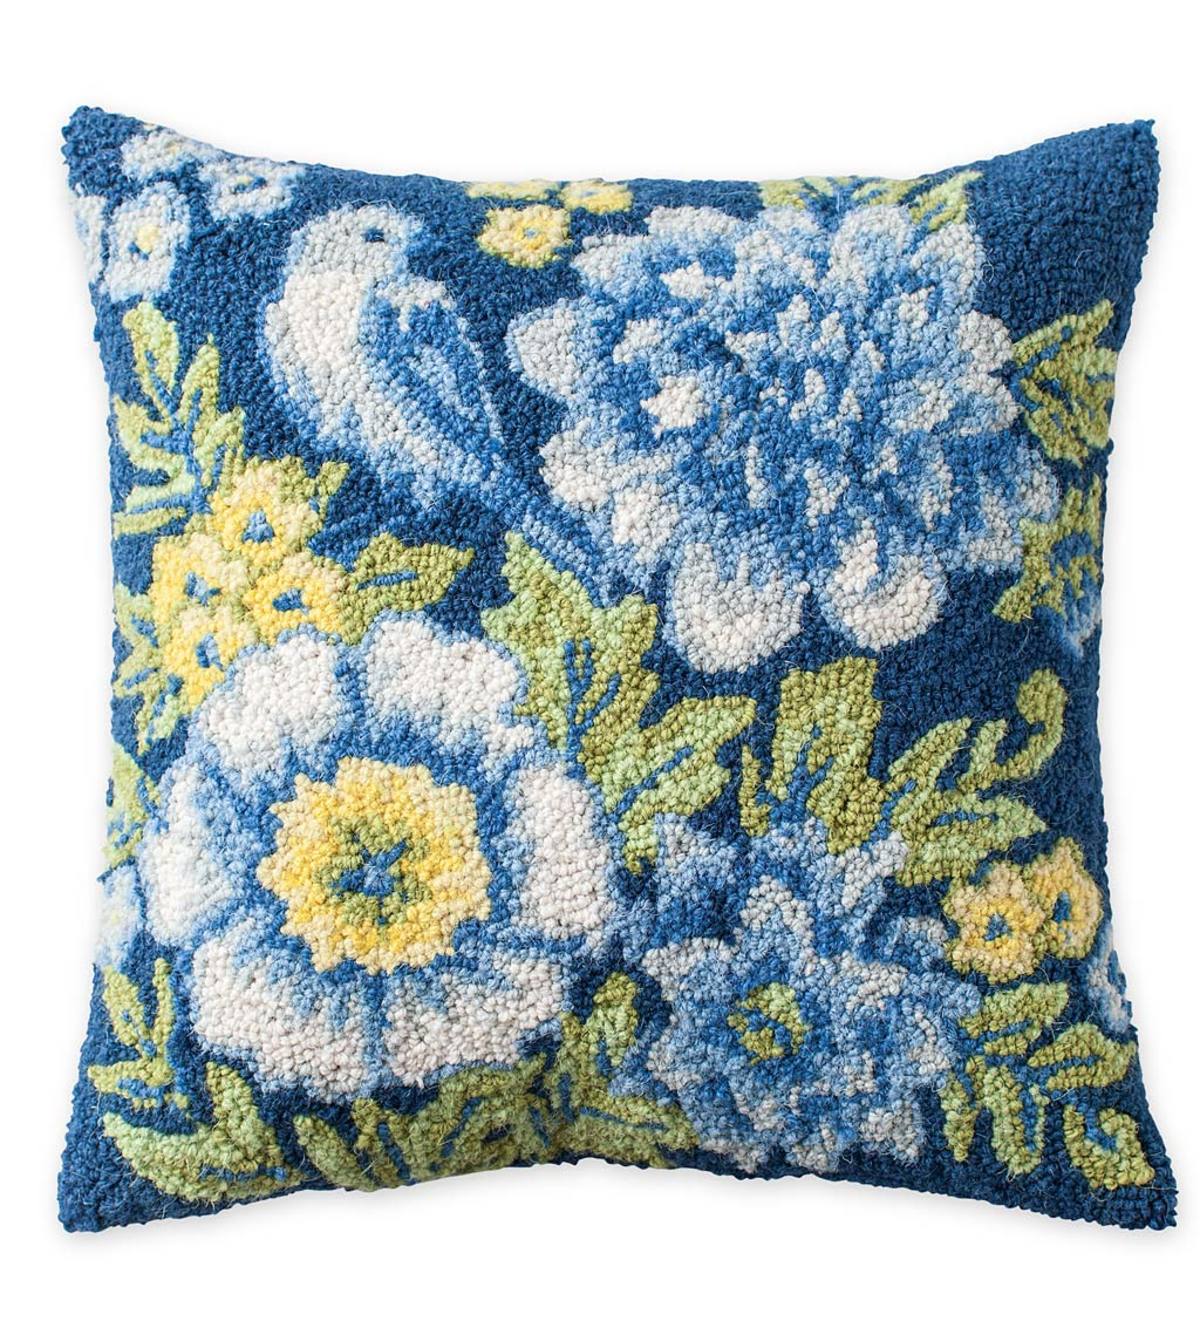 Hand-Hooked Wool Bluebird Song Throw Pillow